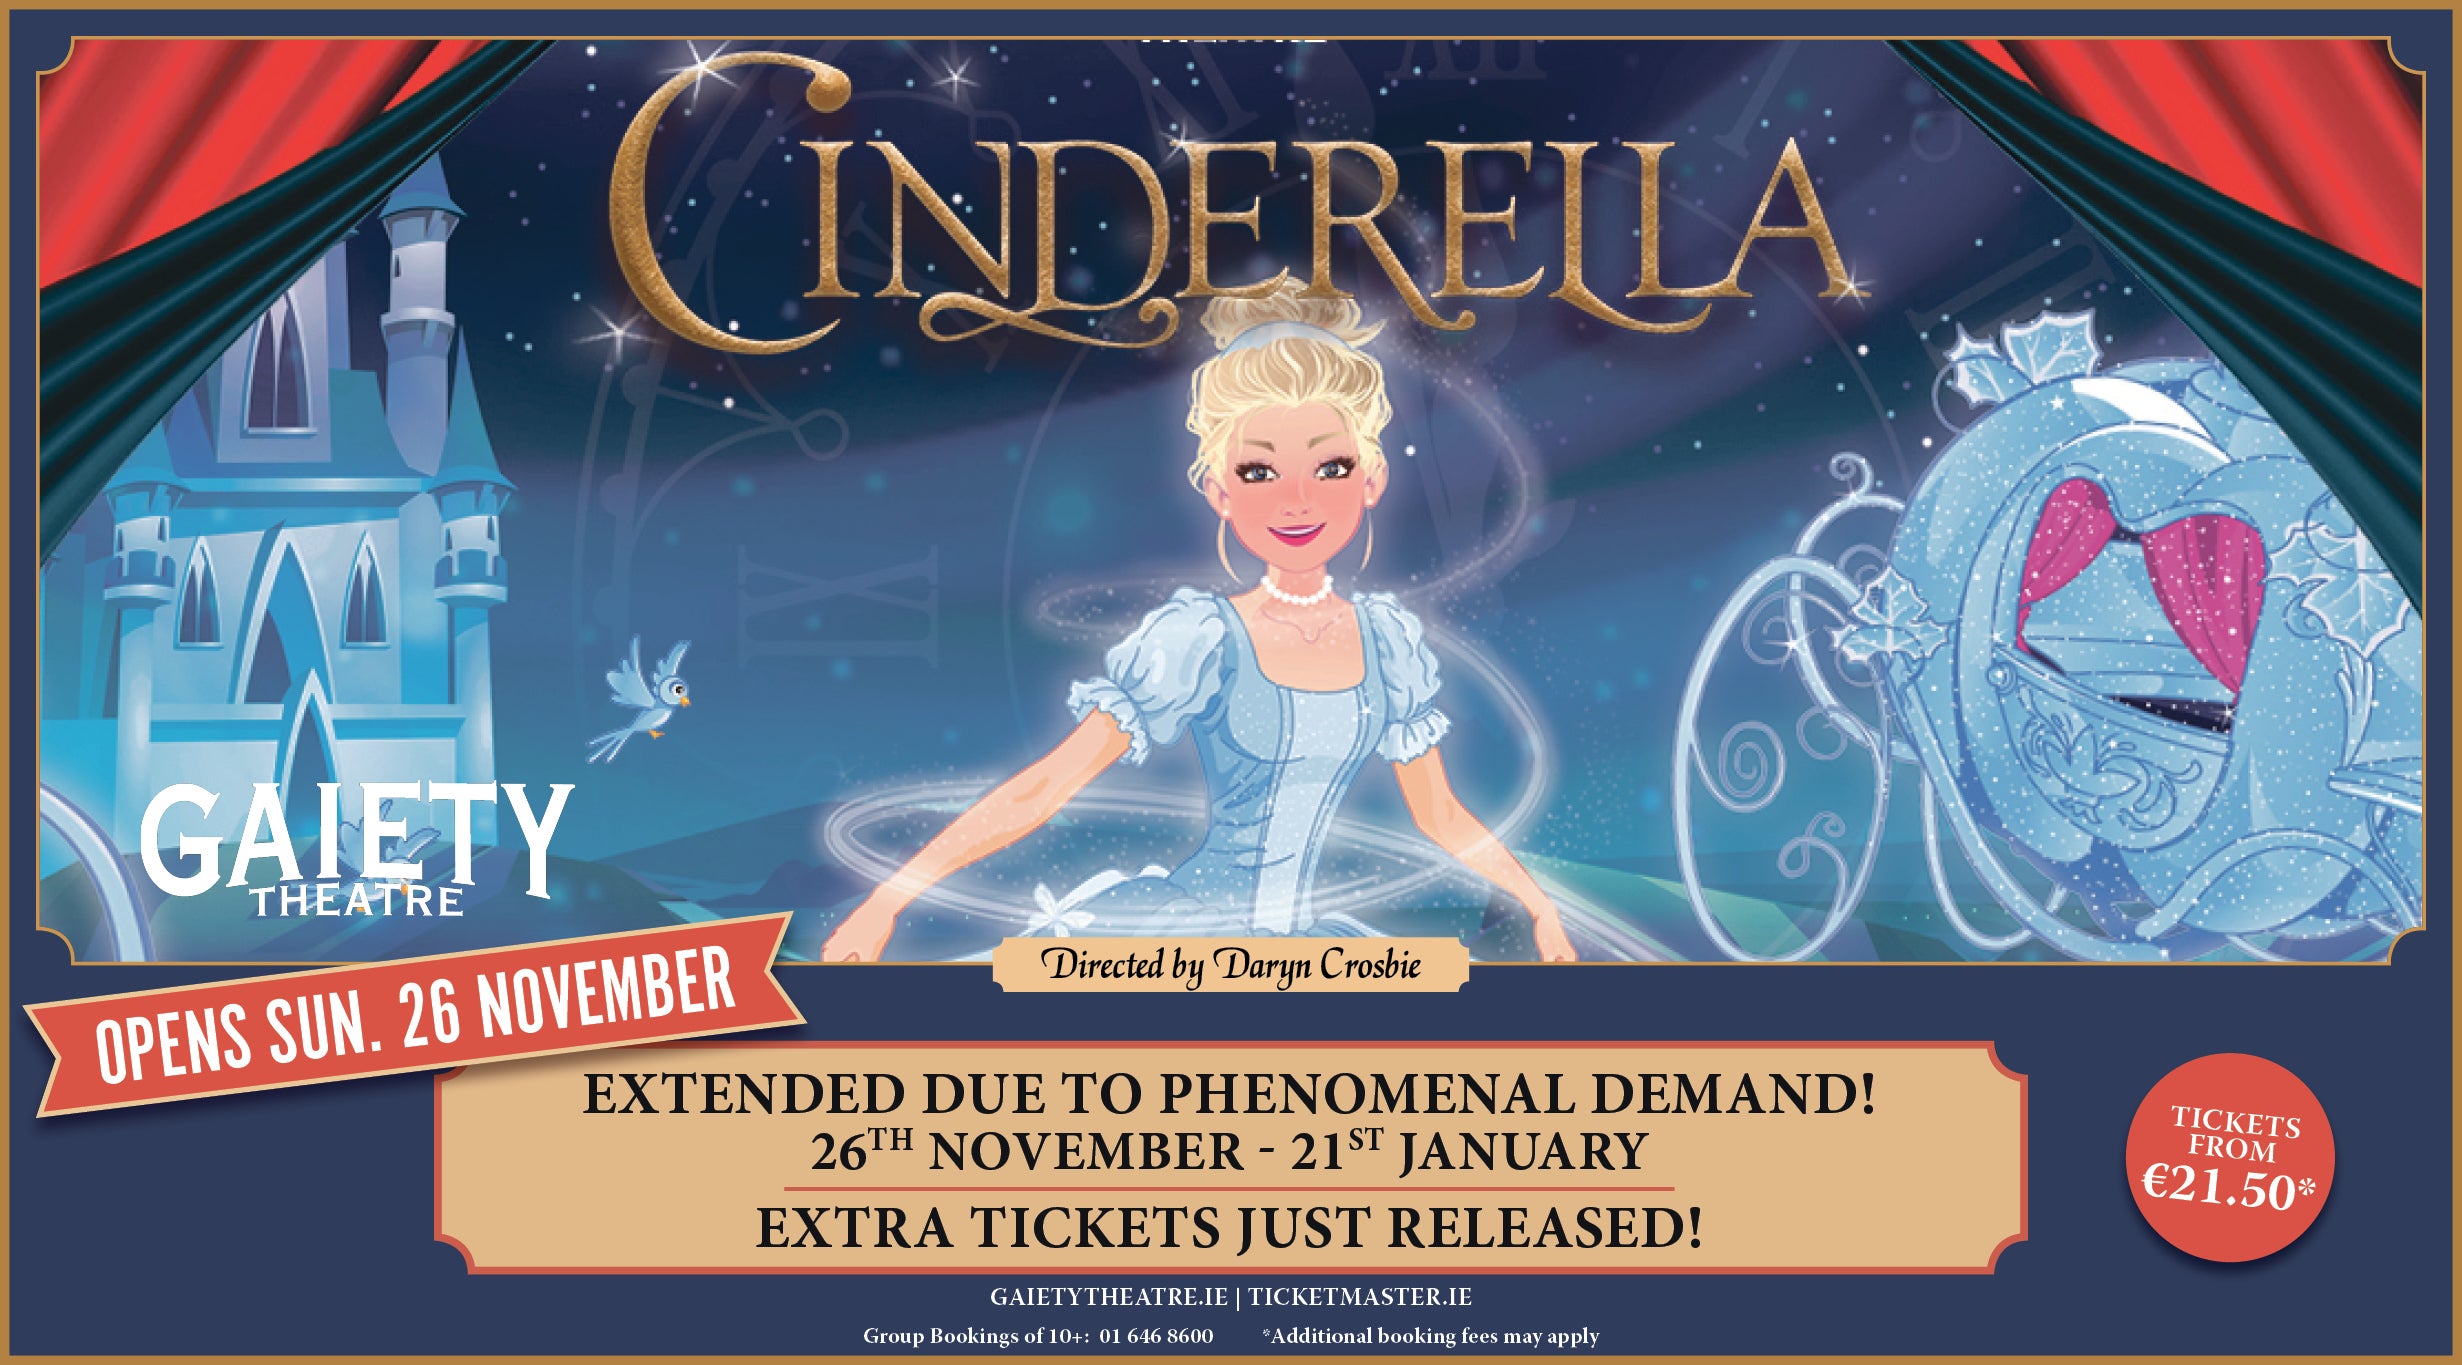 Cinderella - Gaiety Theatre